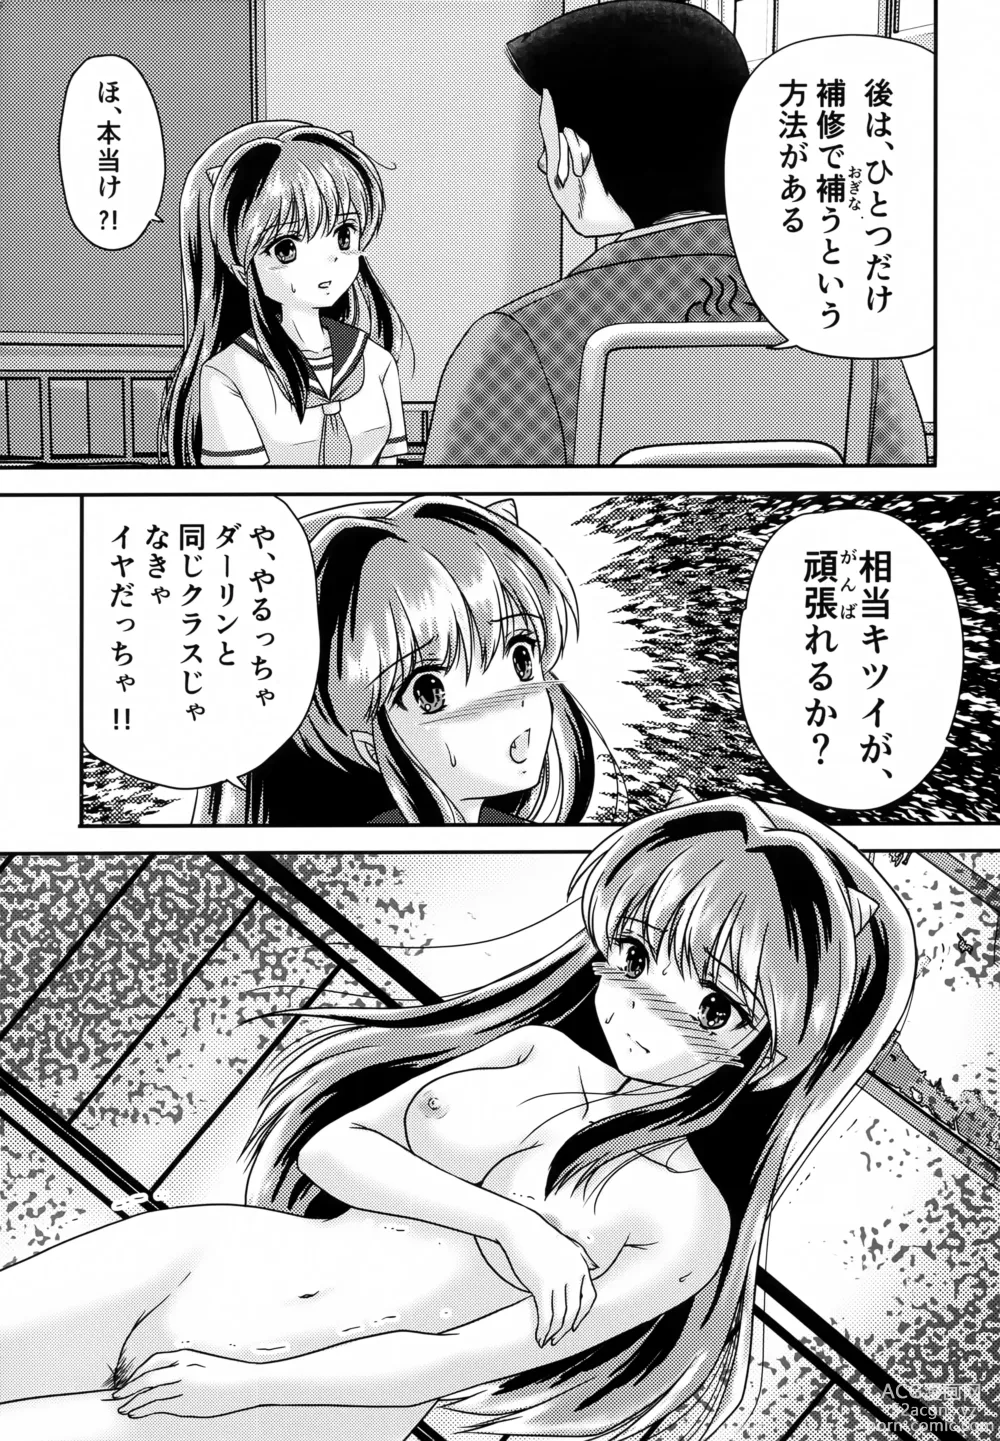 Page 3 of doujinshi Oni no Chiru Ramu